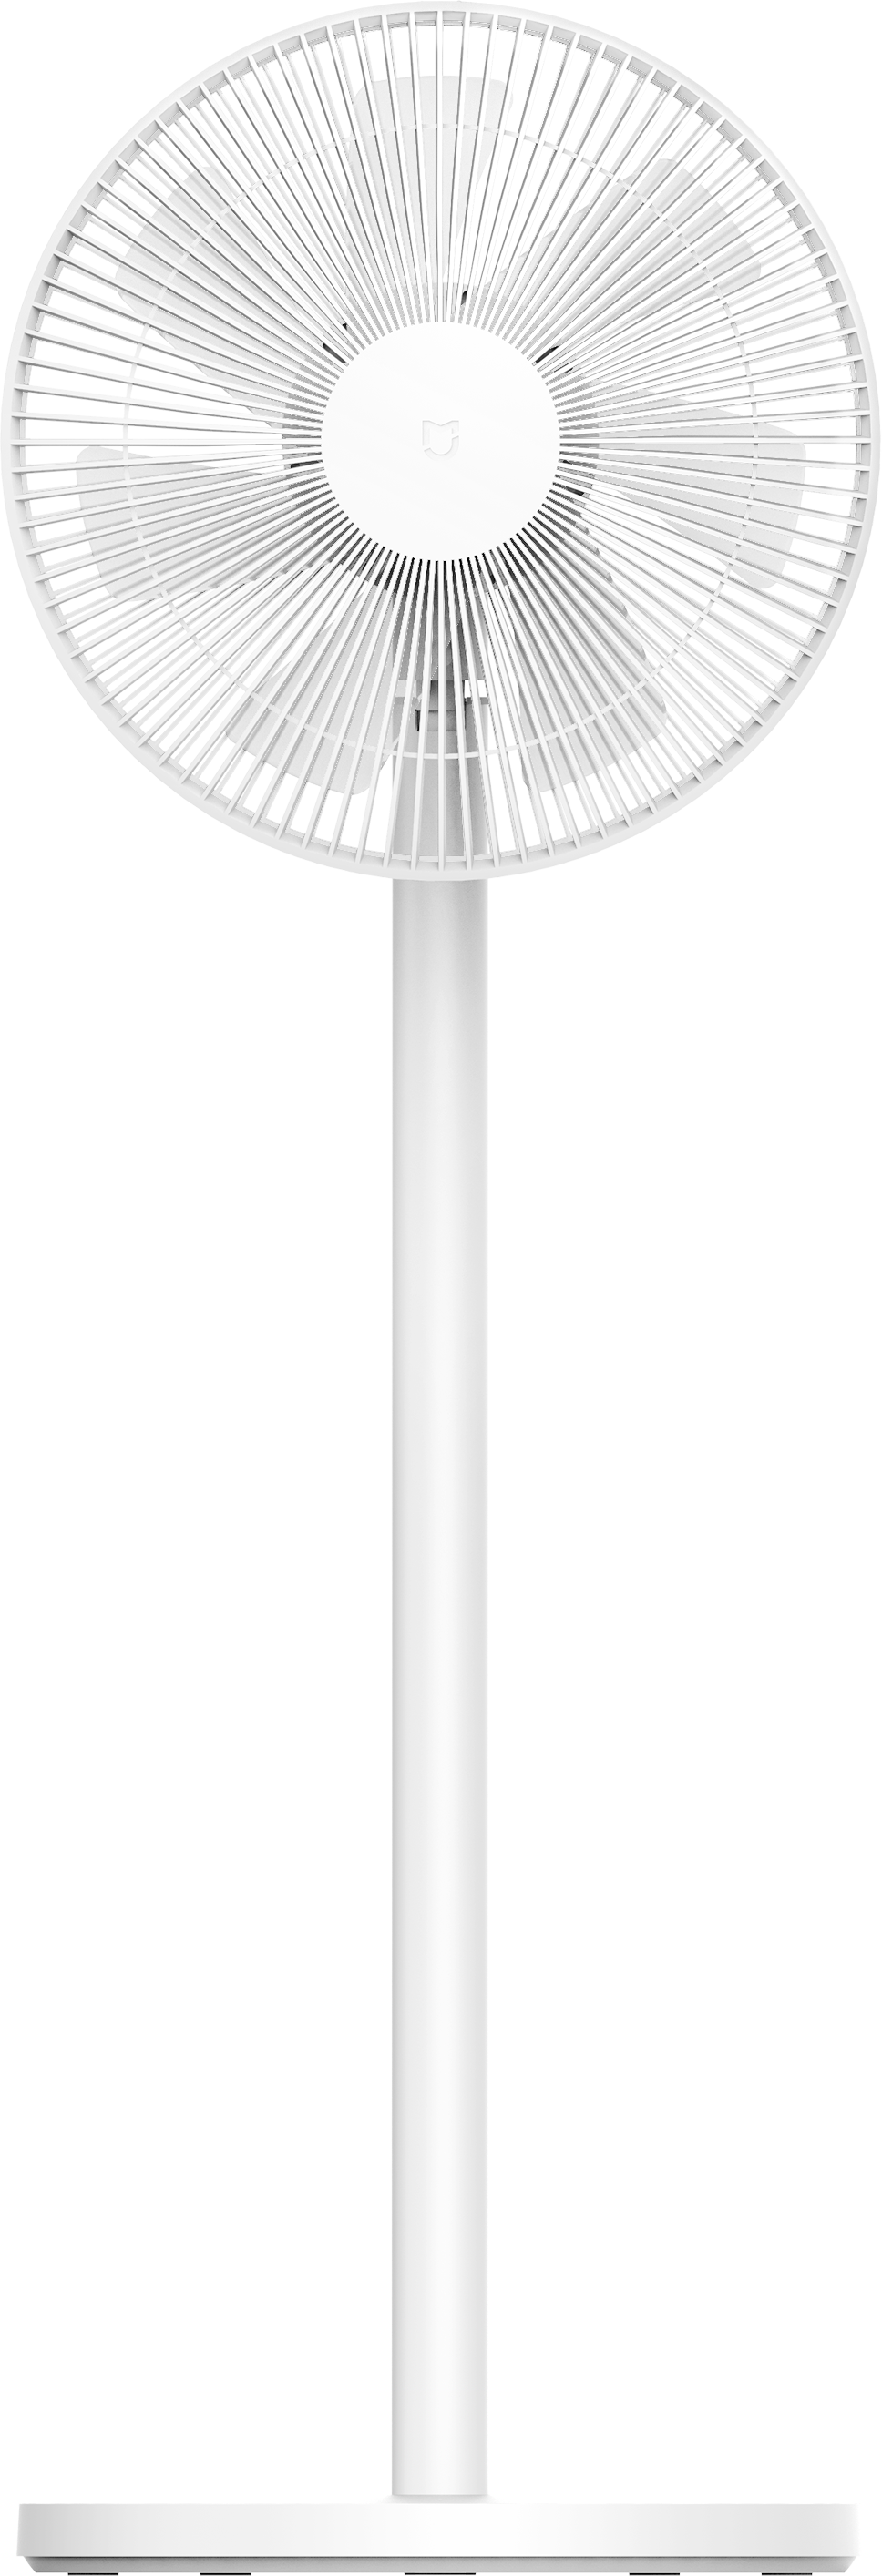 Xiaomi Mi Smart Standing Fan 2 Lite (1C)